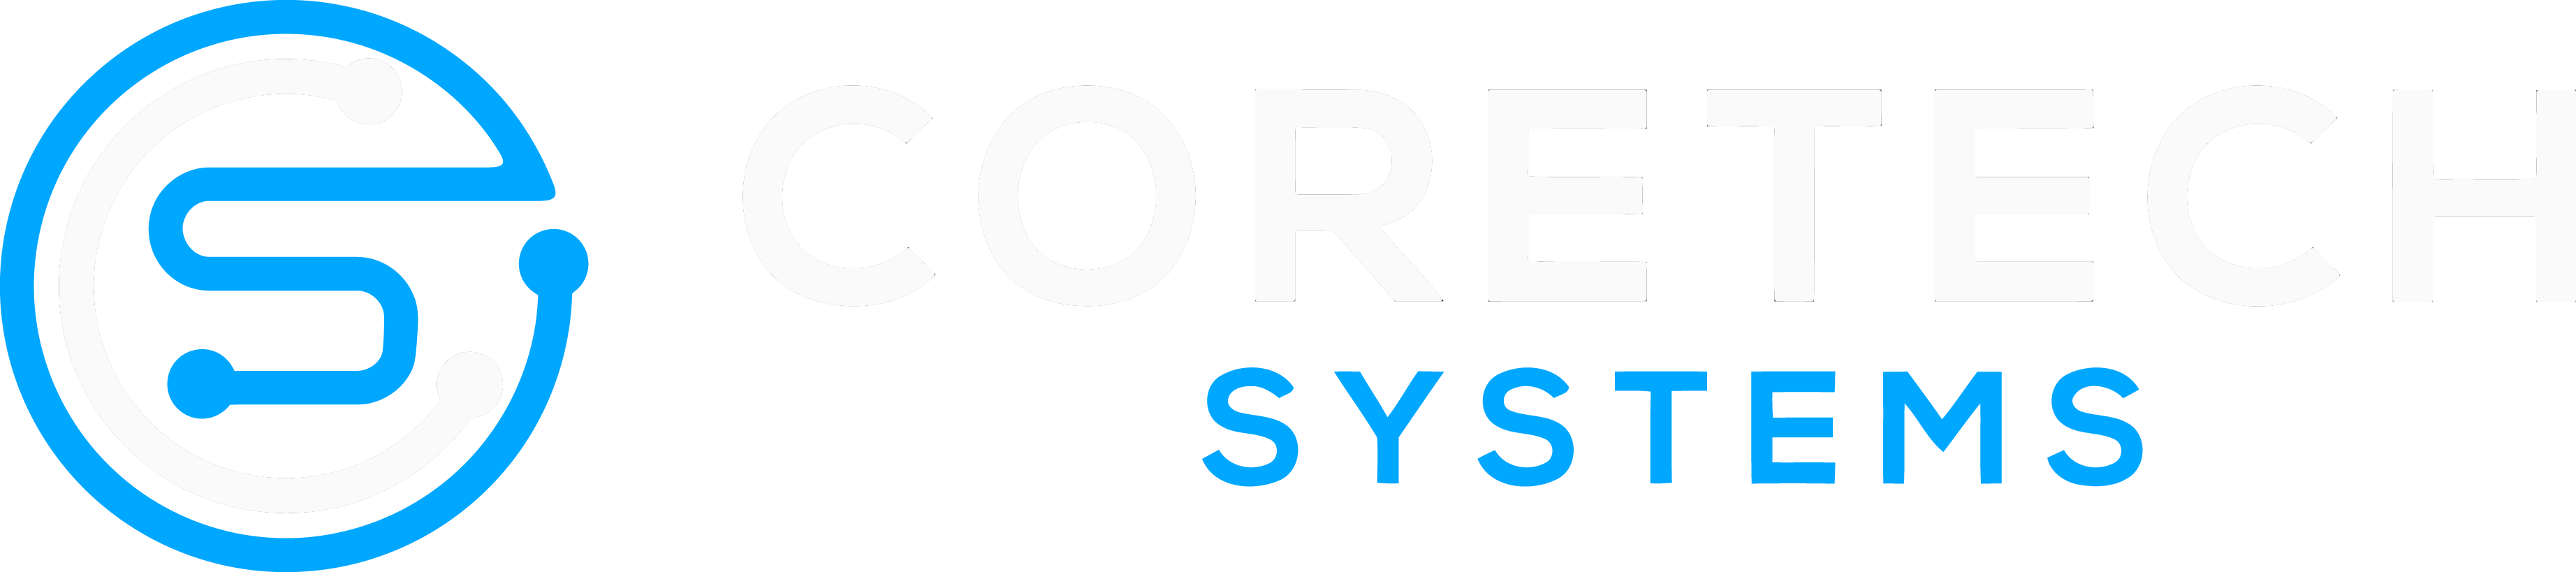 Coretech Systems